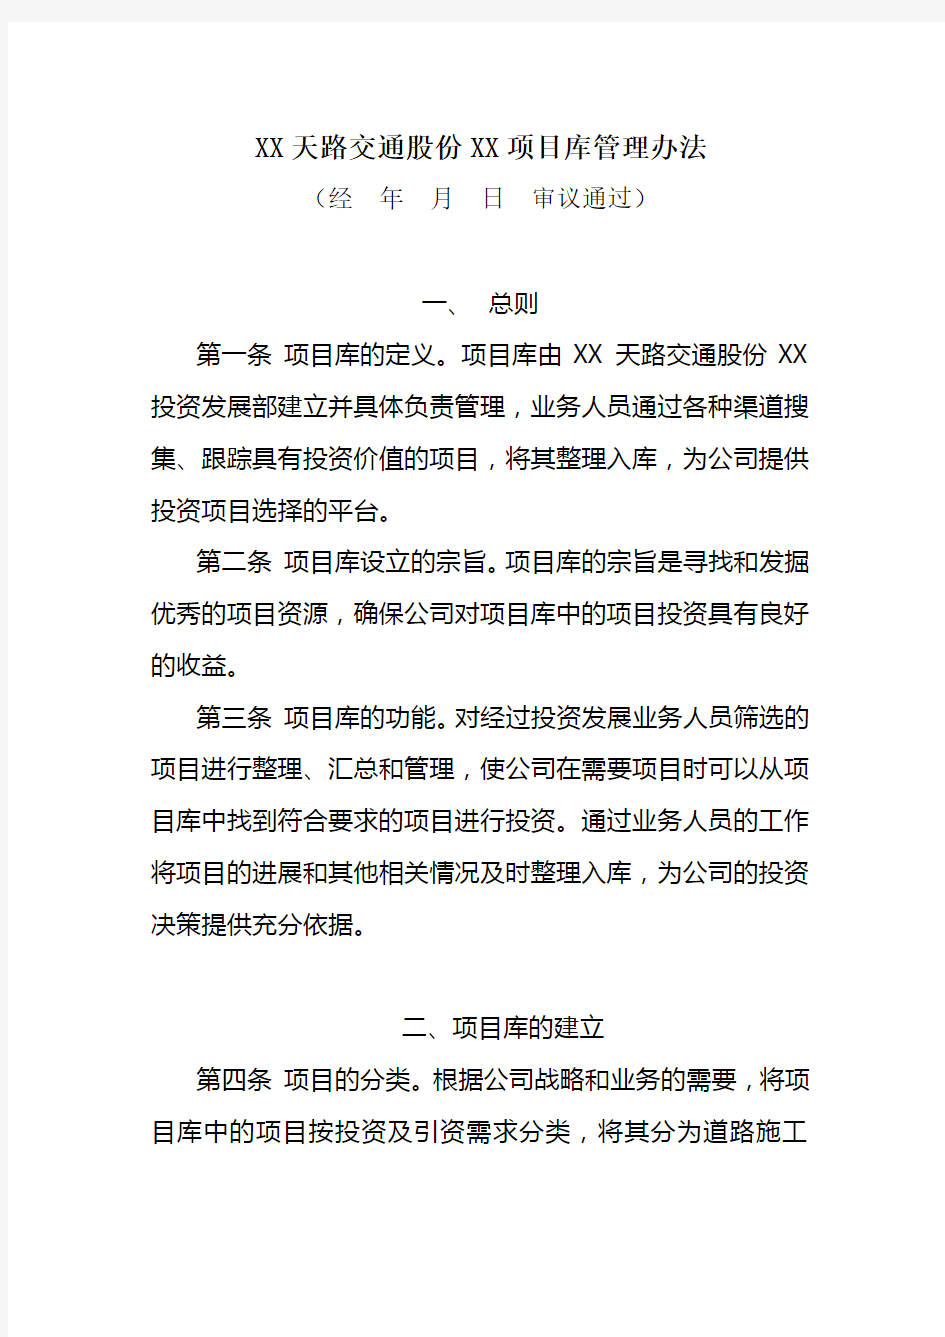 西藏天路交通股份有限公司项目库管理办法